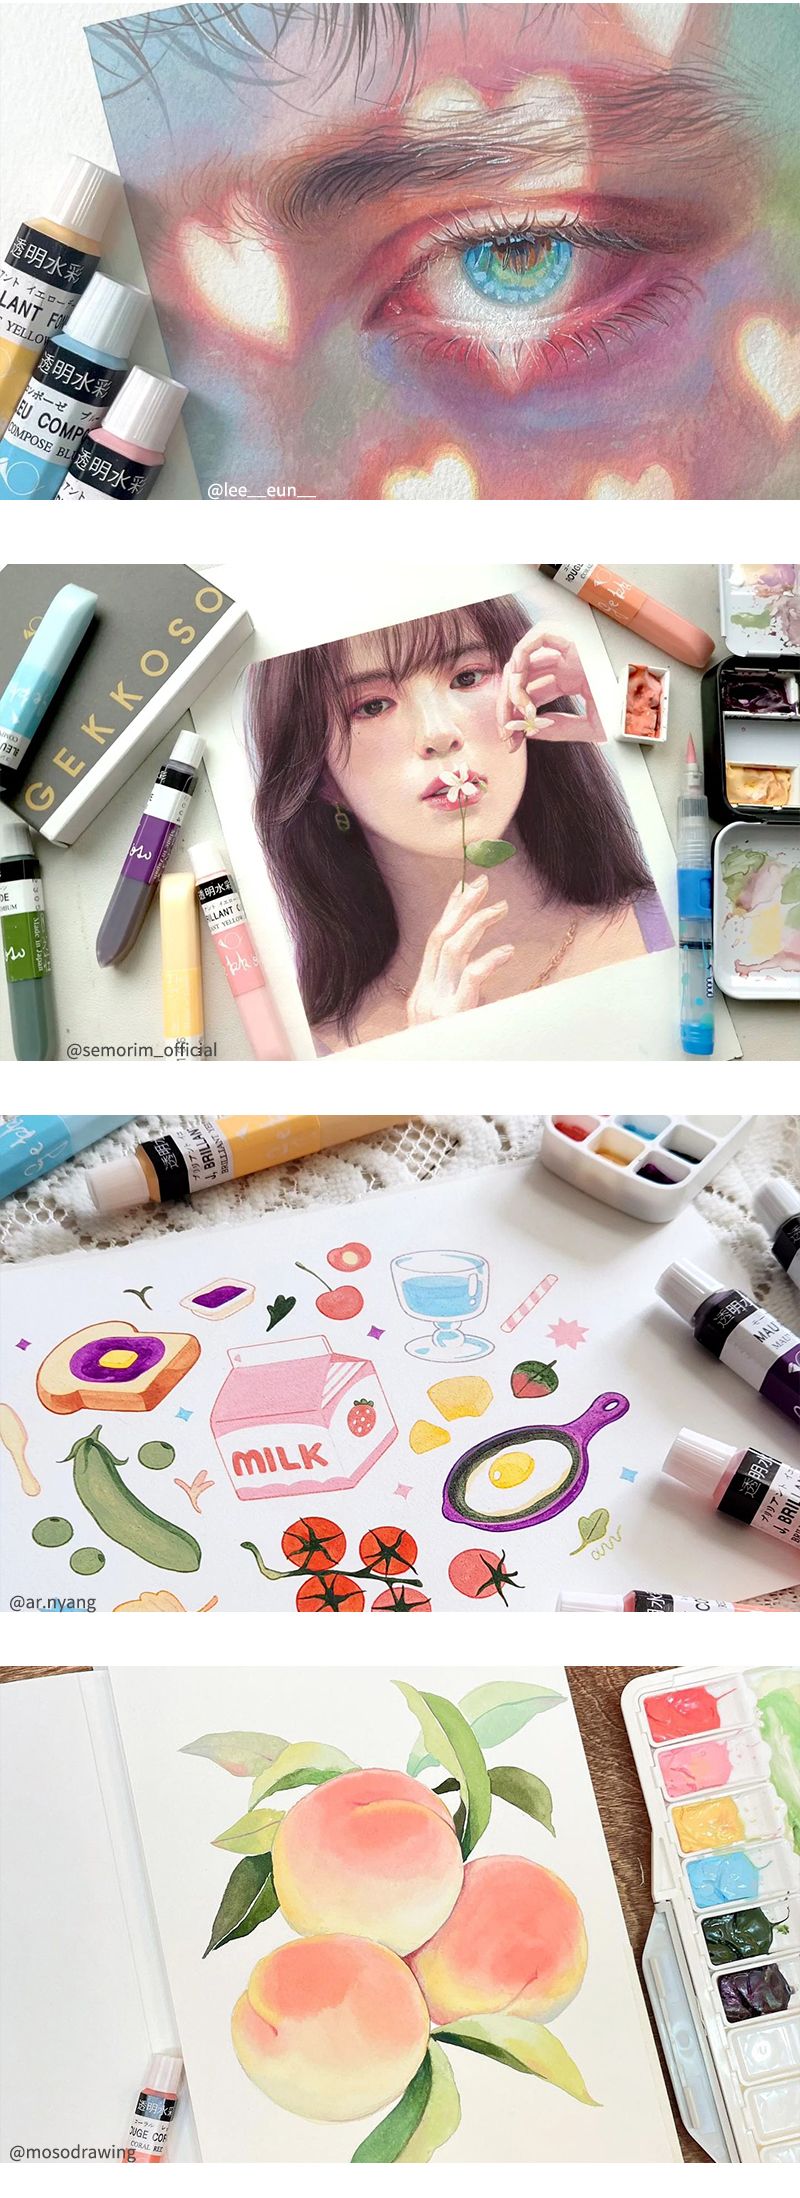 겟코소 수채화물감 페인터즈 그림